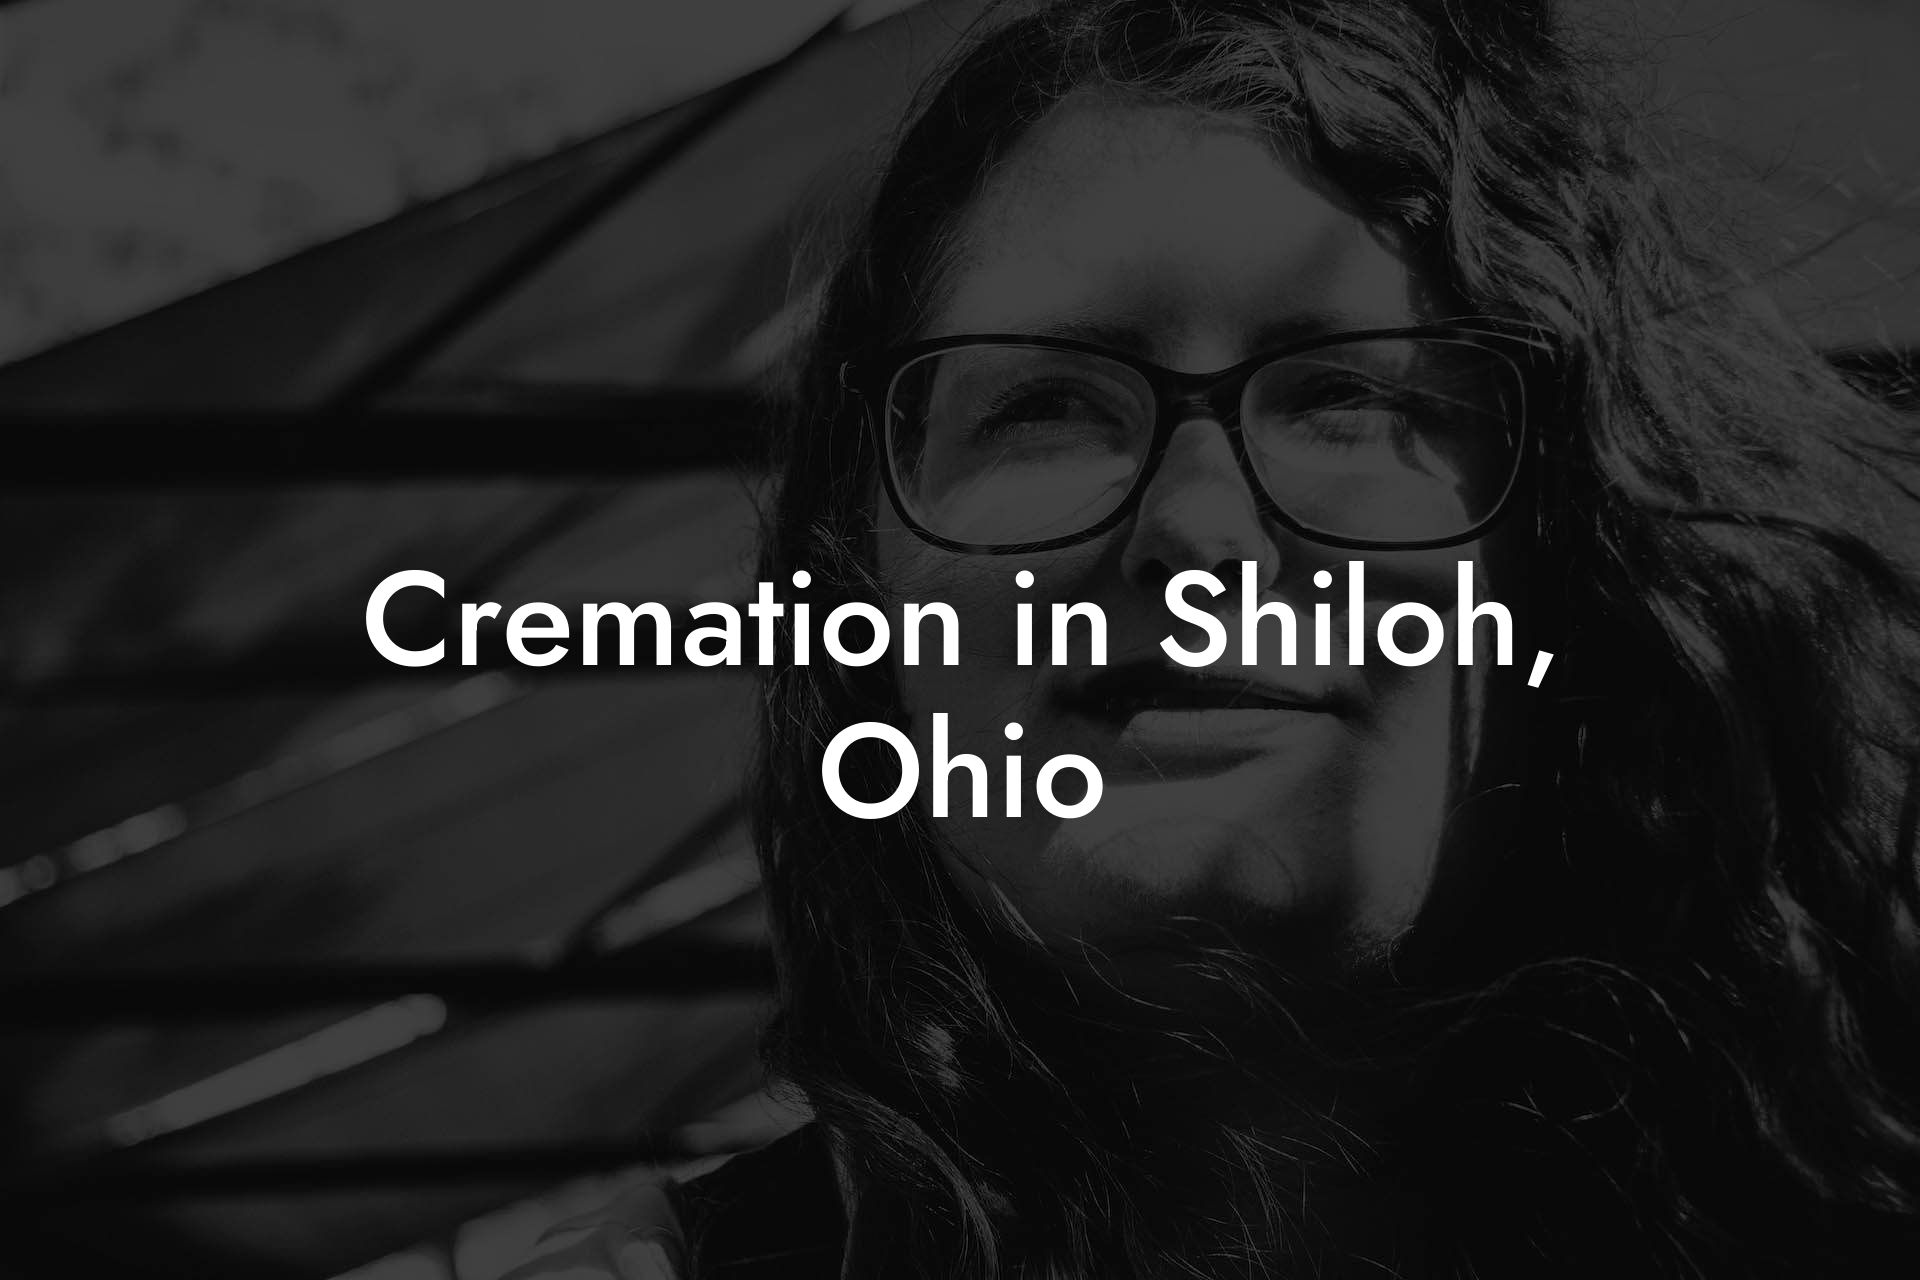 Cremation in Shiloh, Ohio